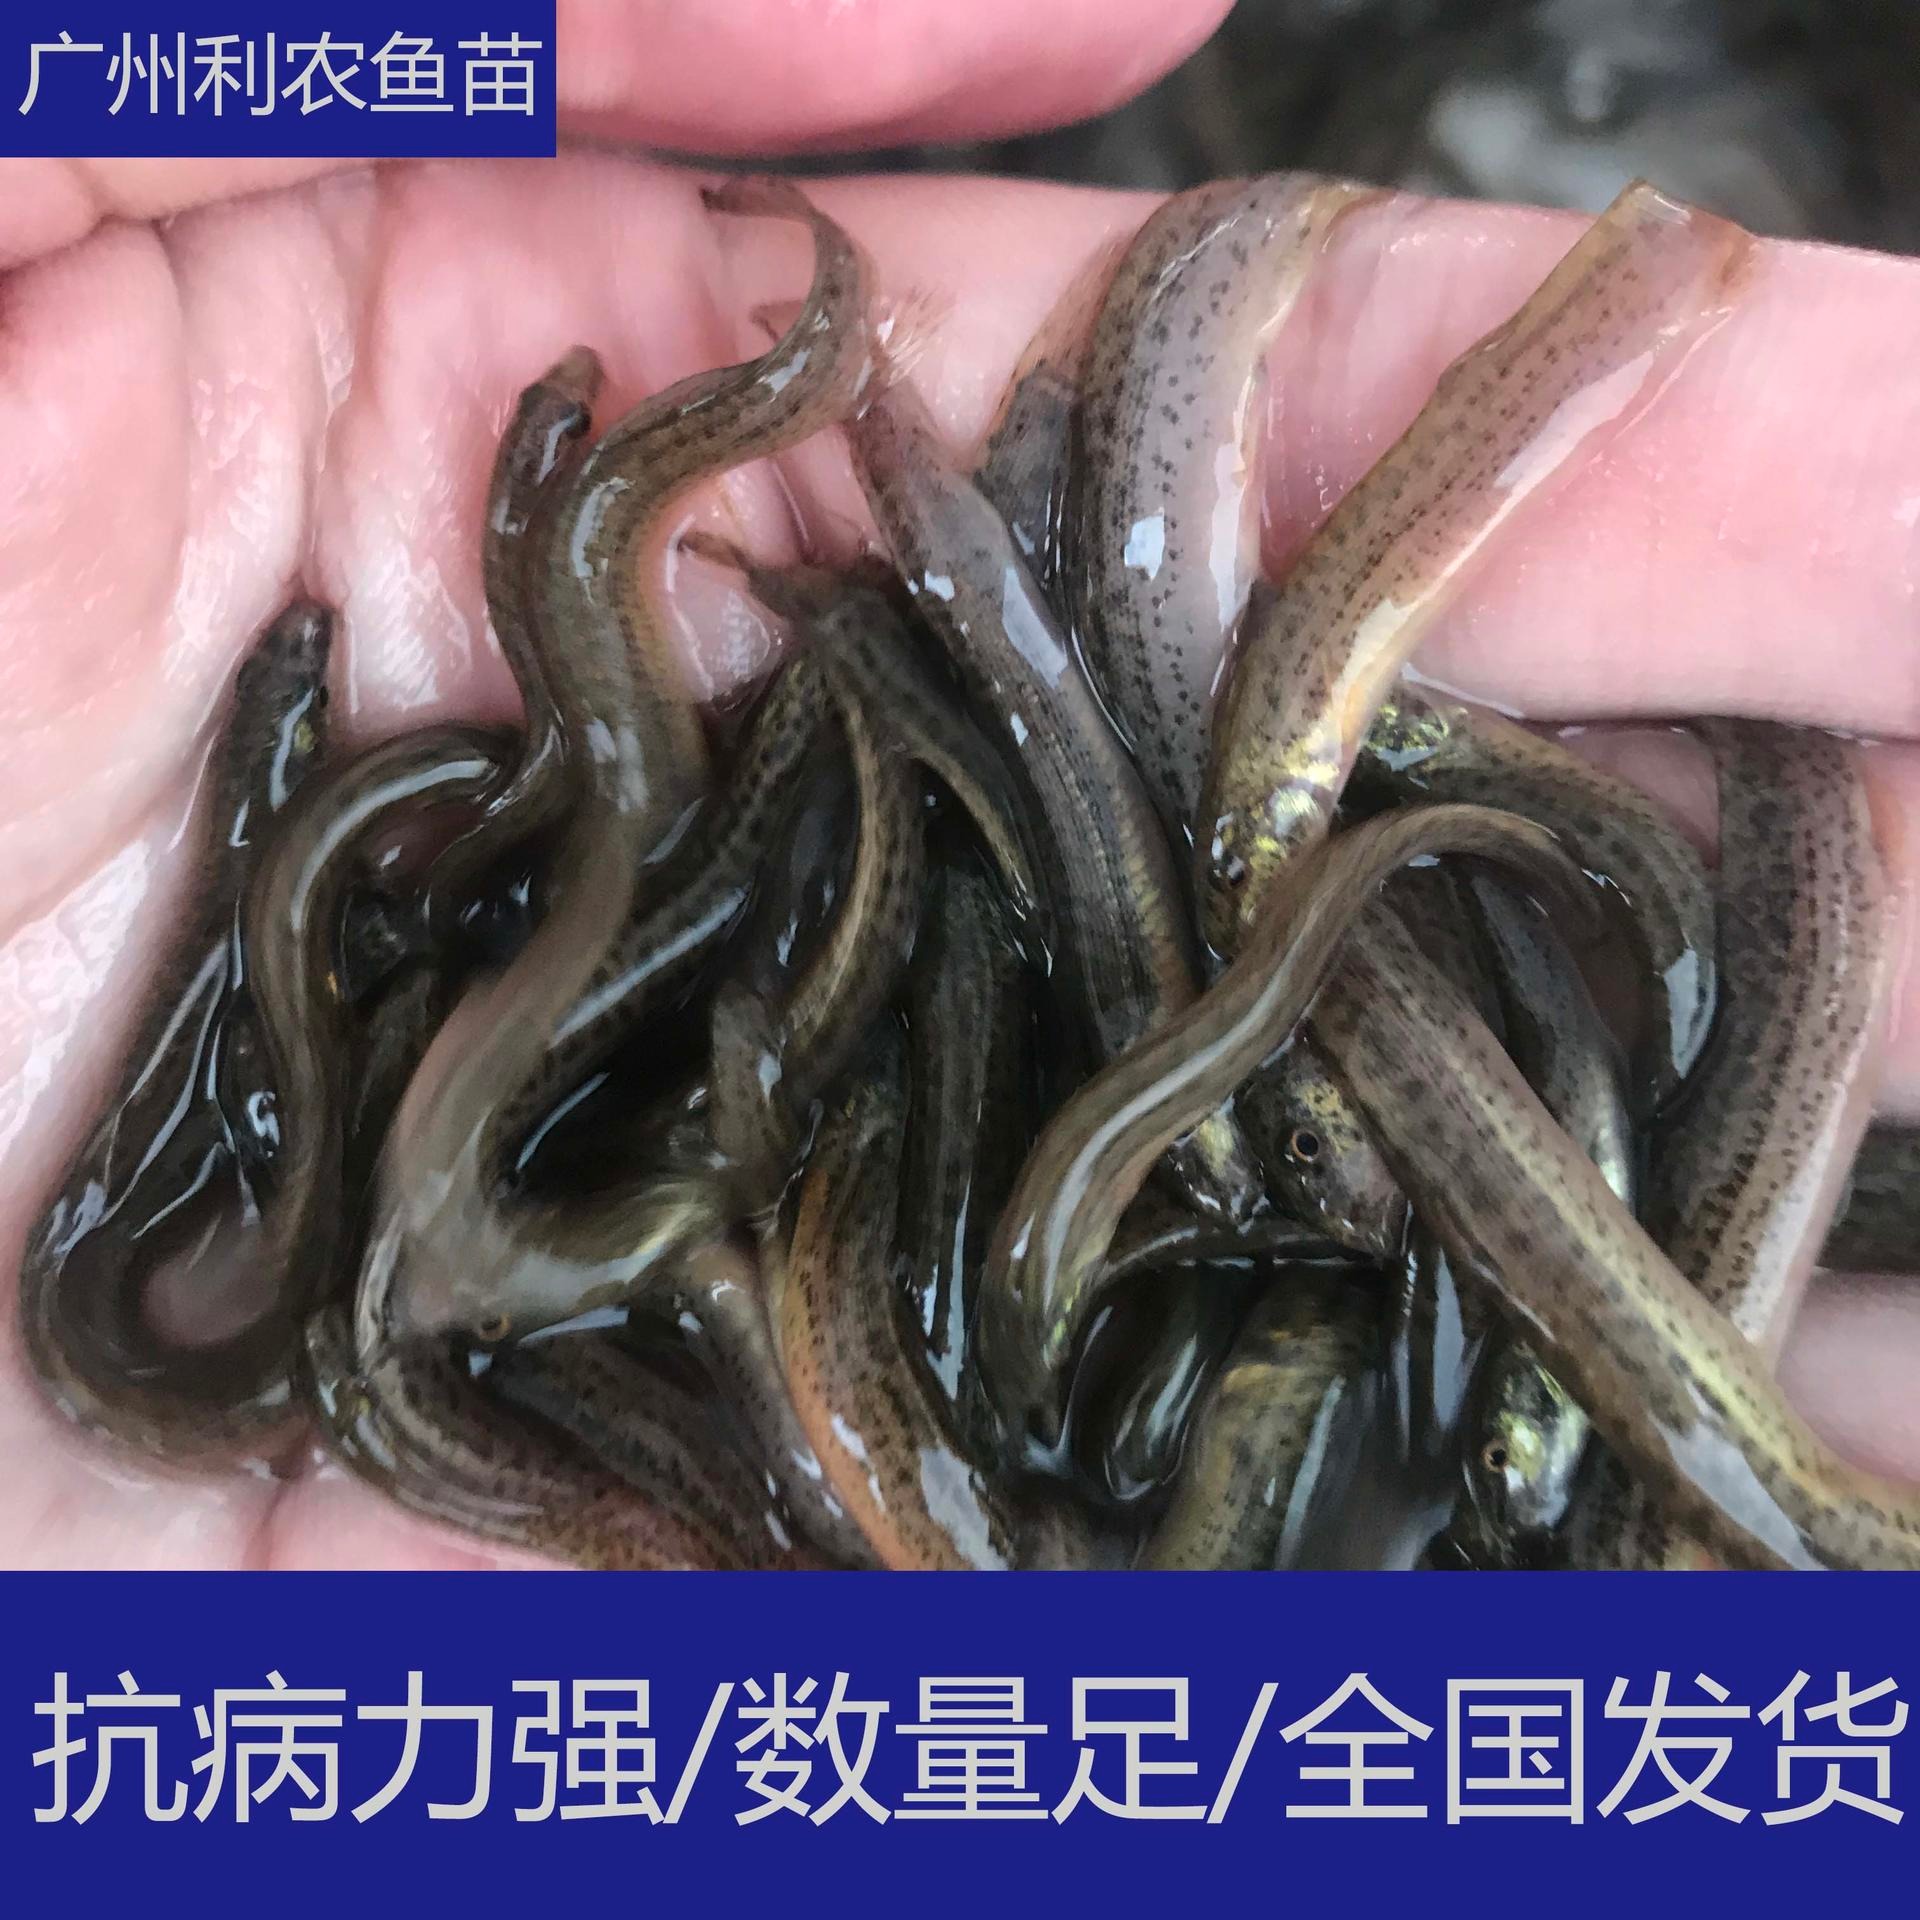 技术指导 广东韶关泥鳅苗大规格供应 5-6cm优选台湾泥鳅苗孵化养殖